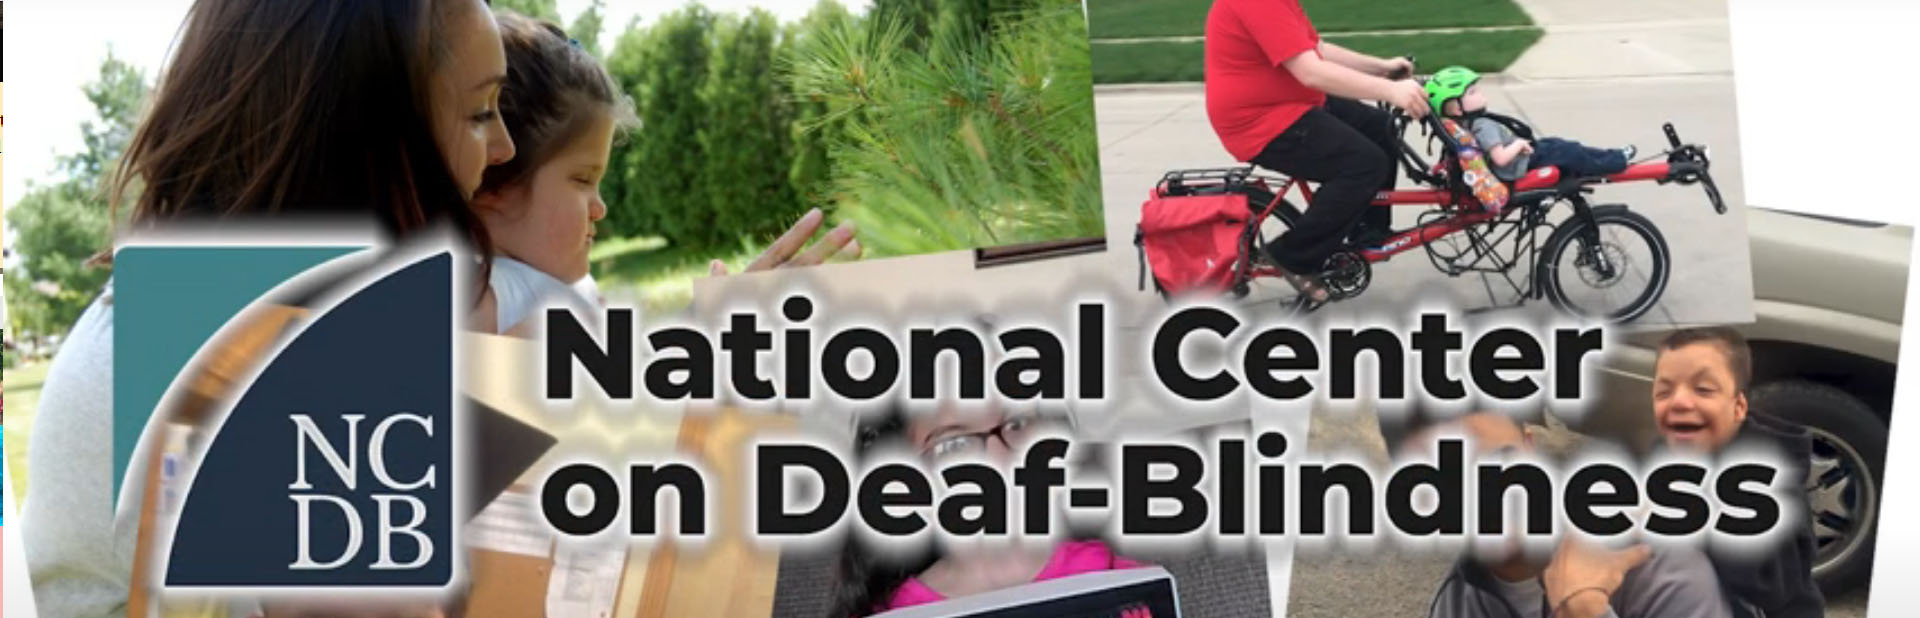 National Center on Deaf-blindness